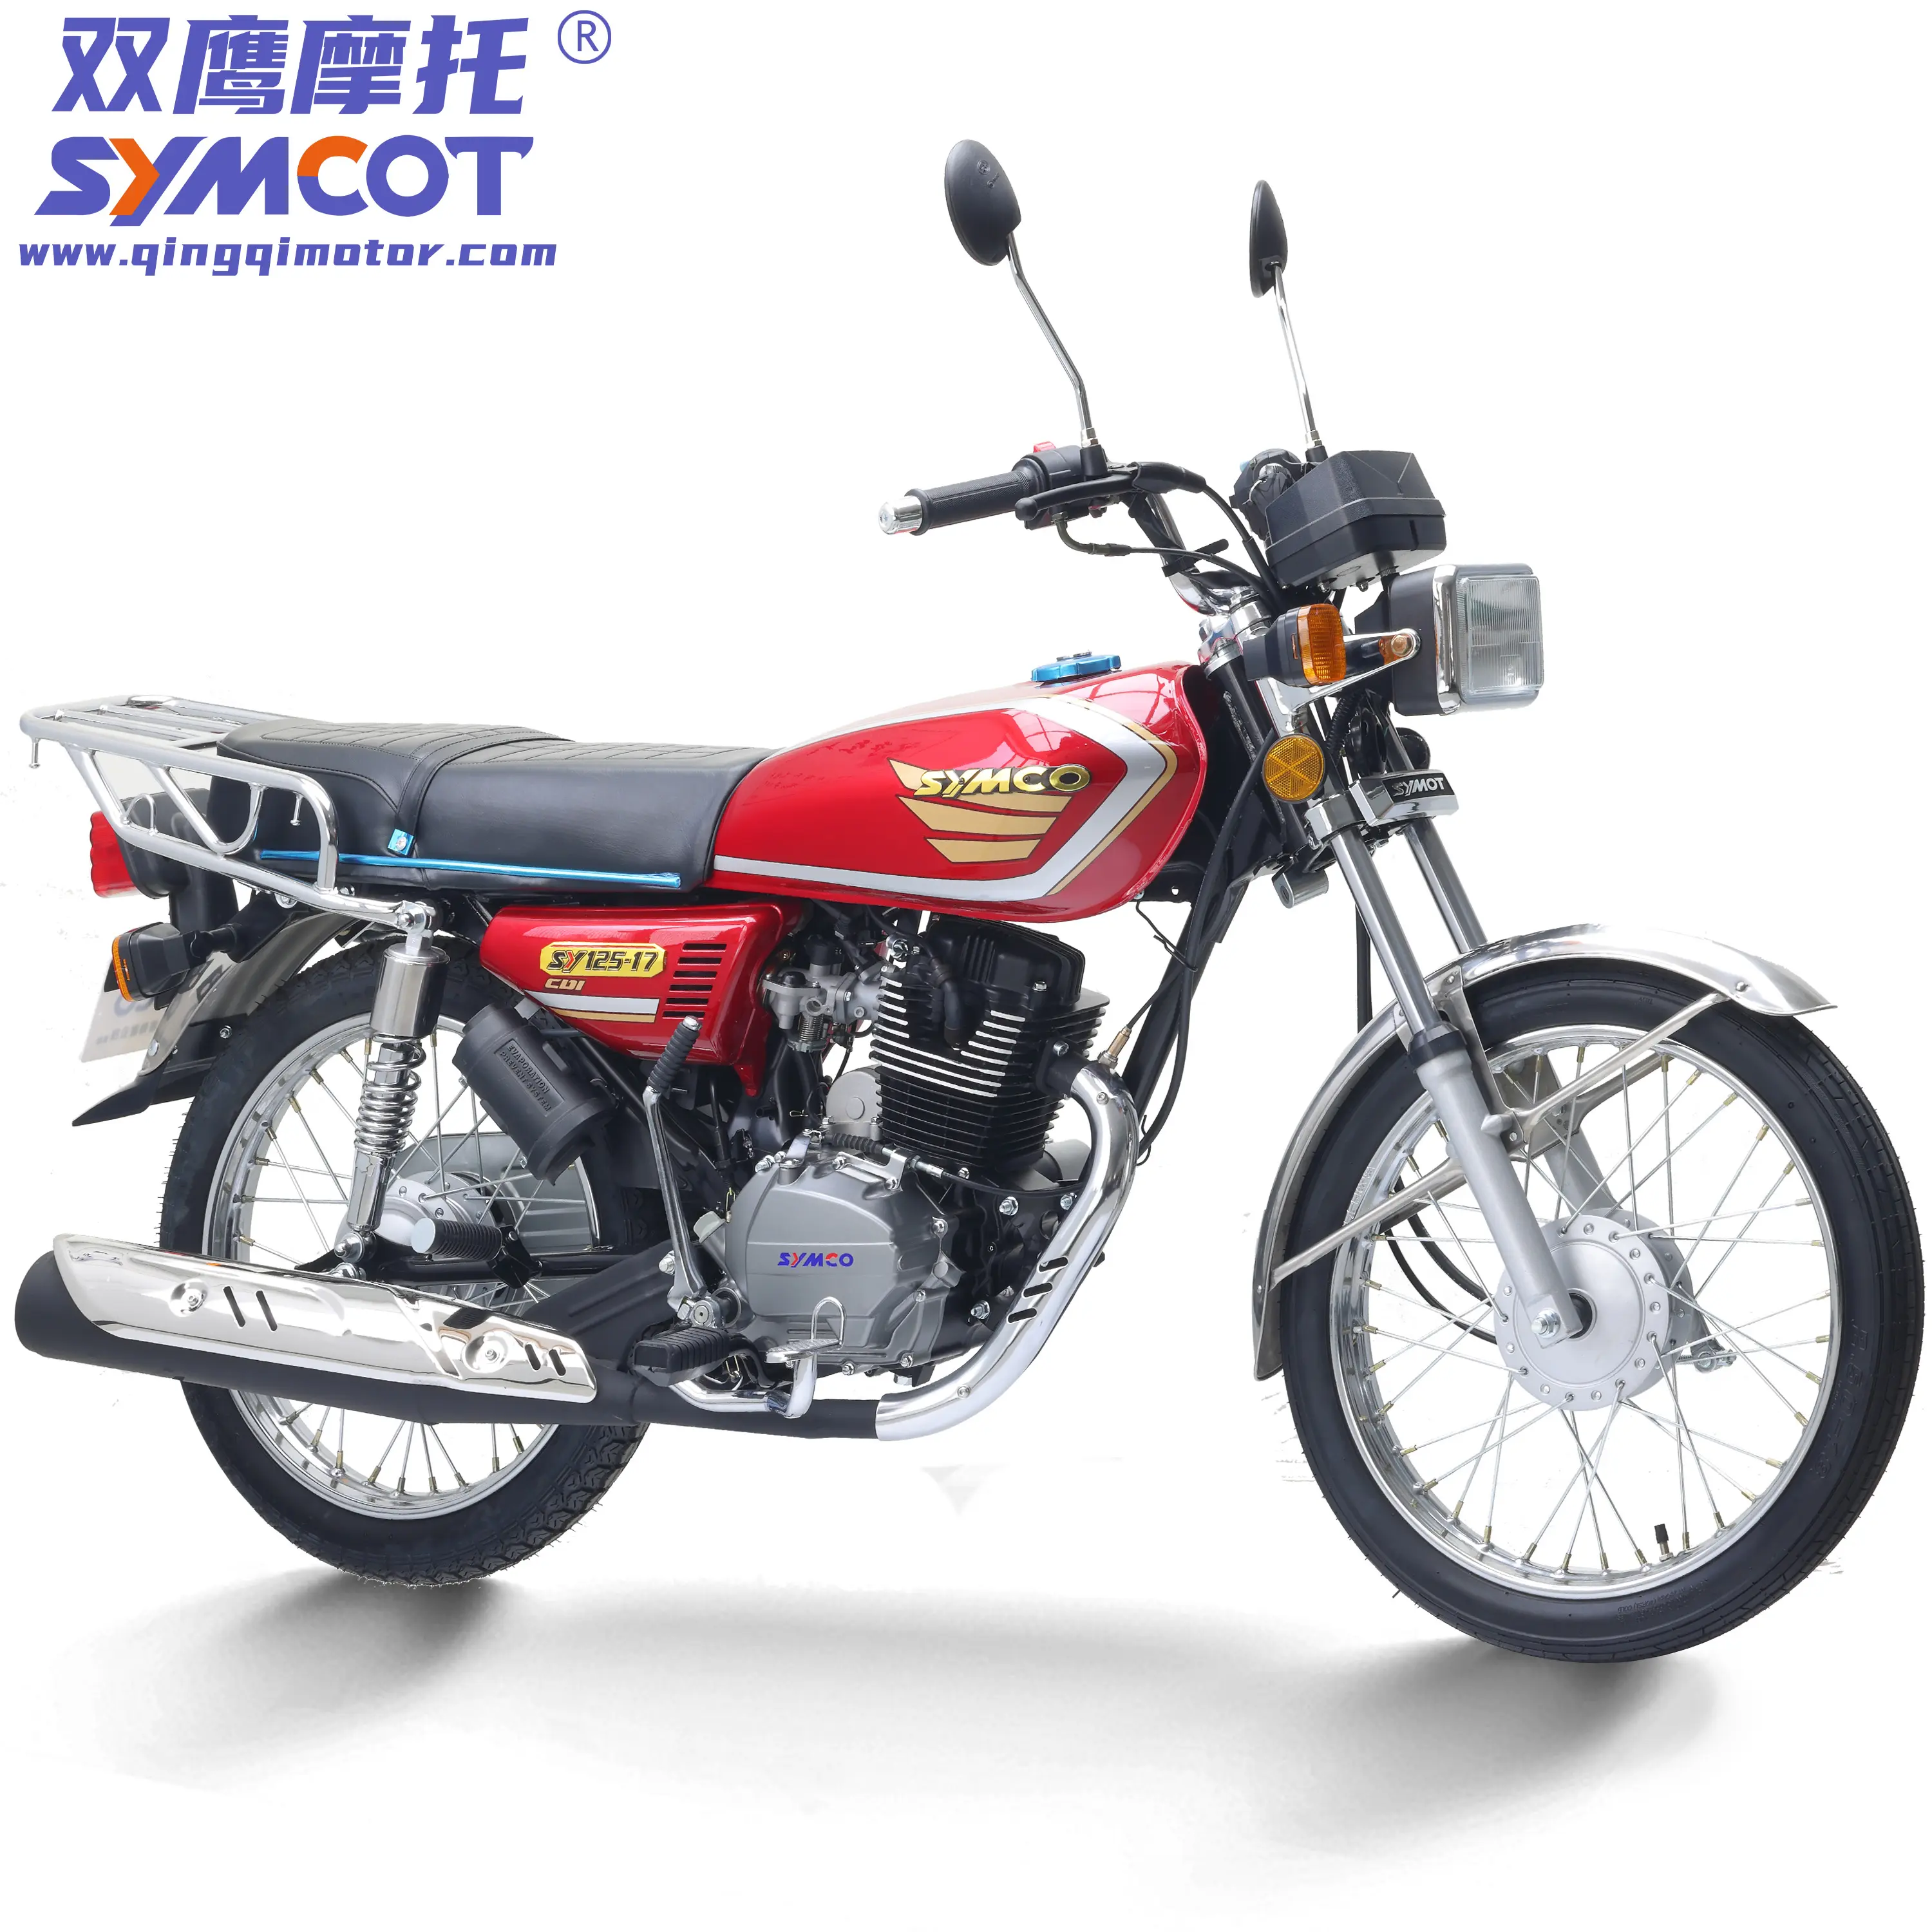 Motociclo cinese economico CG125 CG150 CG175 modello di moto da strada economico con finitura di alta qualità pronto per la spedizione